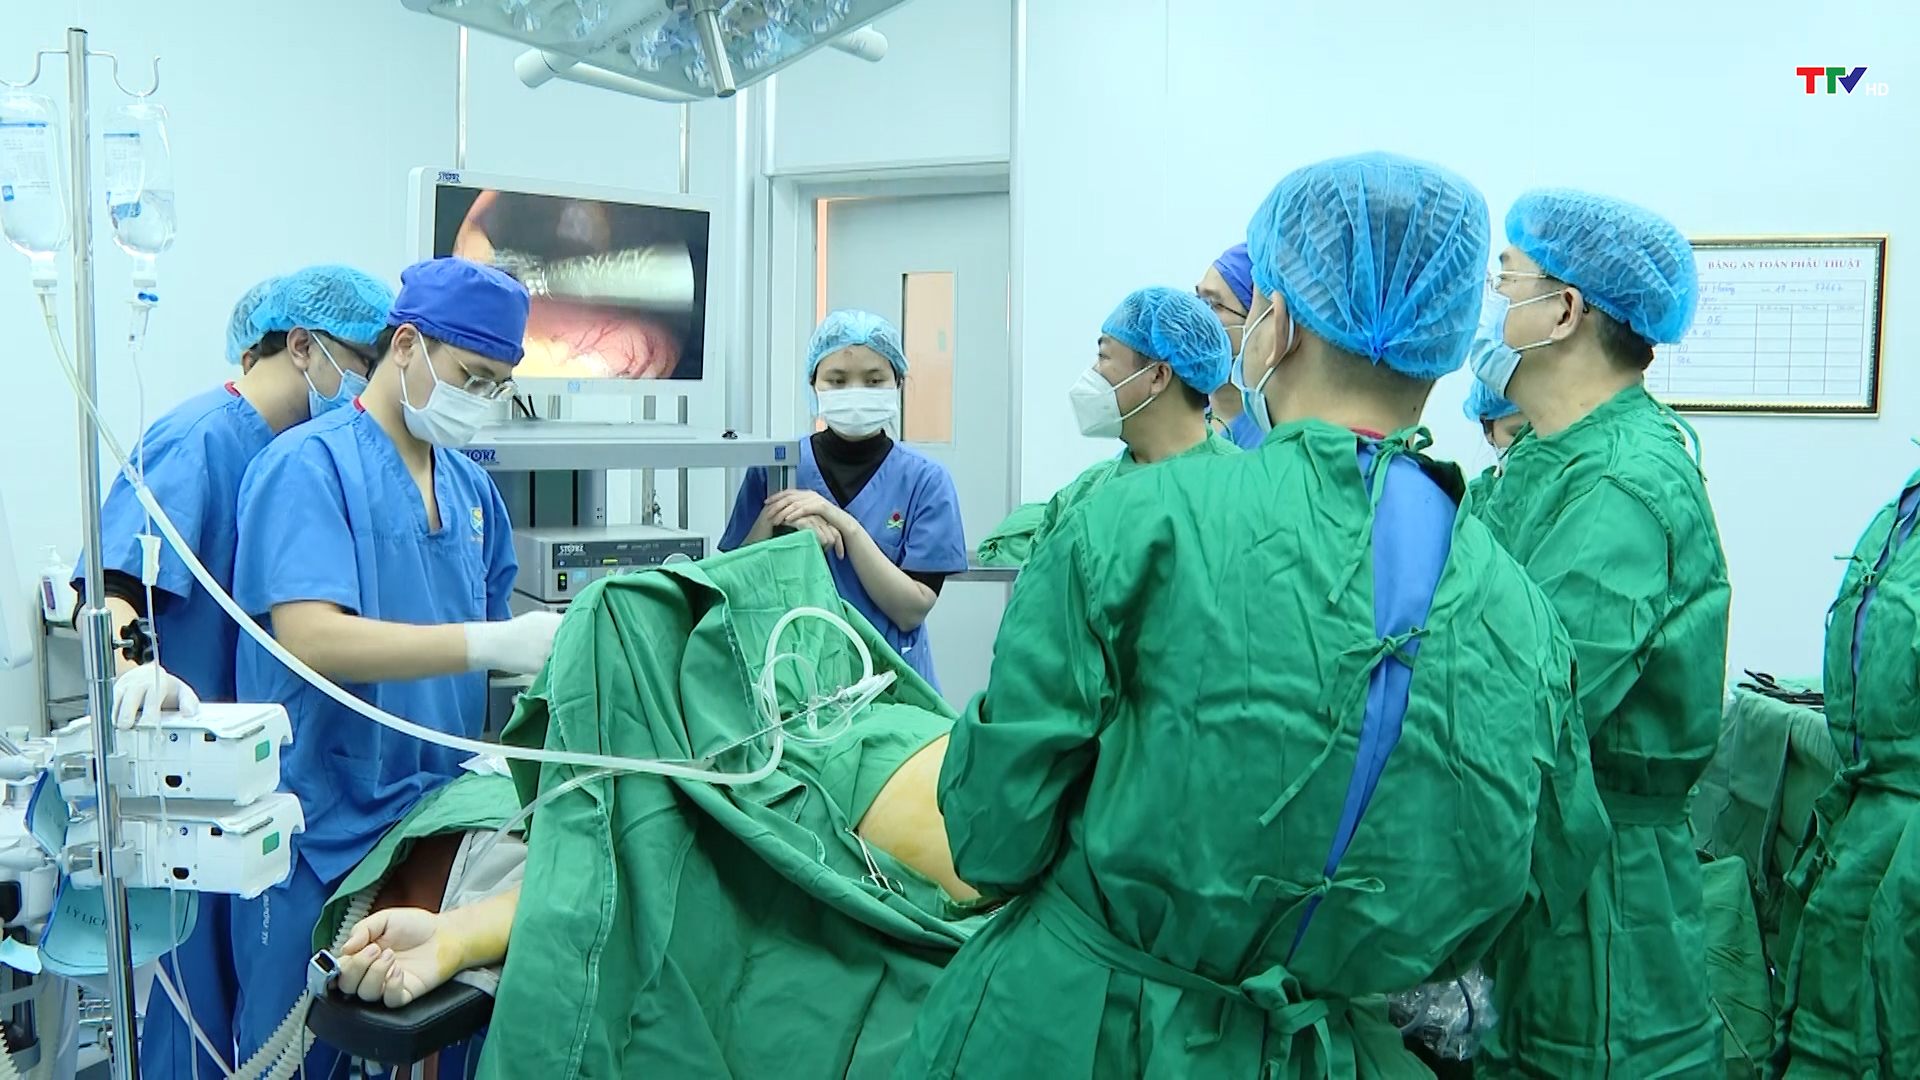 Bệnh viện Ung bướu Thanh Hóa tiếp nhận chuyển giao thành công kỹ thuật cắt gan trong điều trị ung thư gan  - Ảnh 2.